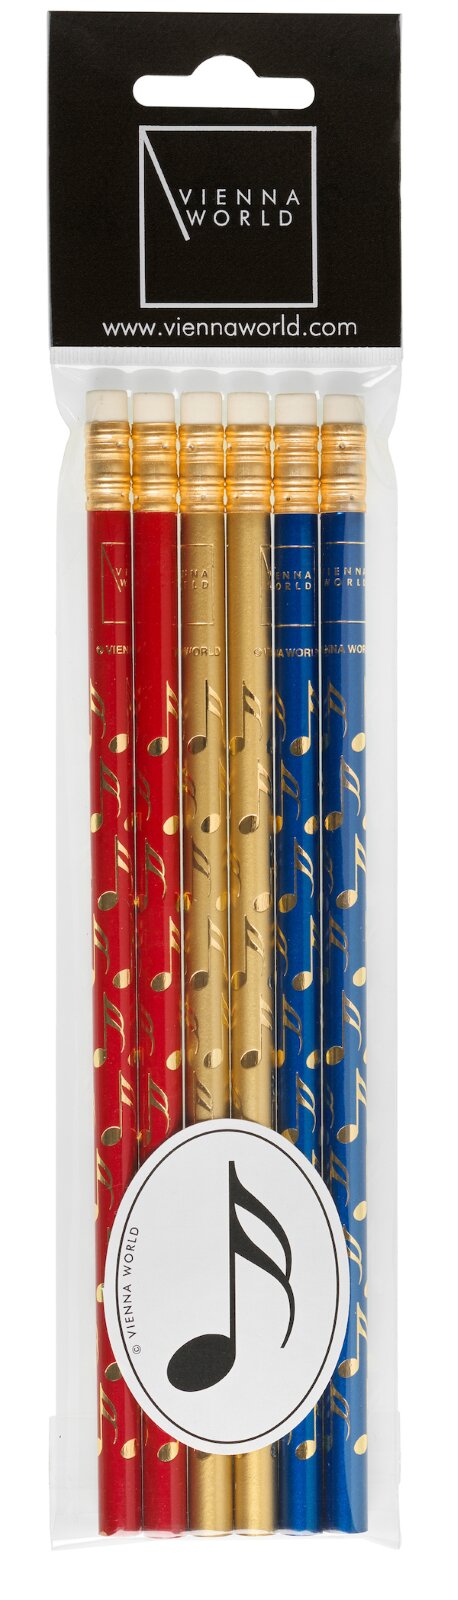 Vienna World Set 6 Bleistift mit RadiergummiBleistift-Set - Notes (Colored 6 Pack) rot / gold / blau (6 Stück pro Packung) Schreibmaterial Z 727 : photo 1